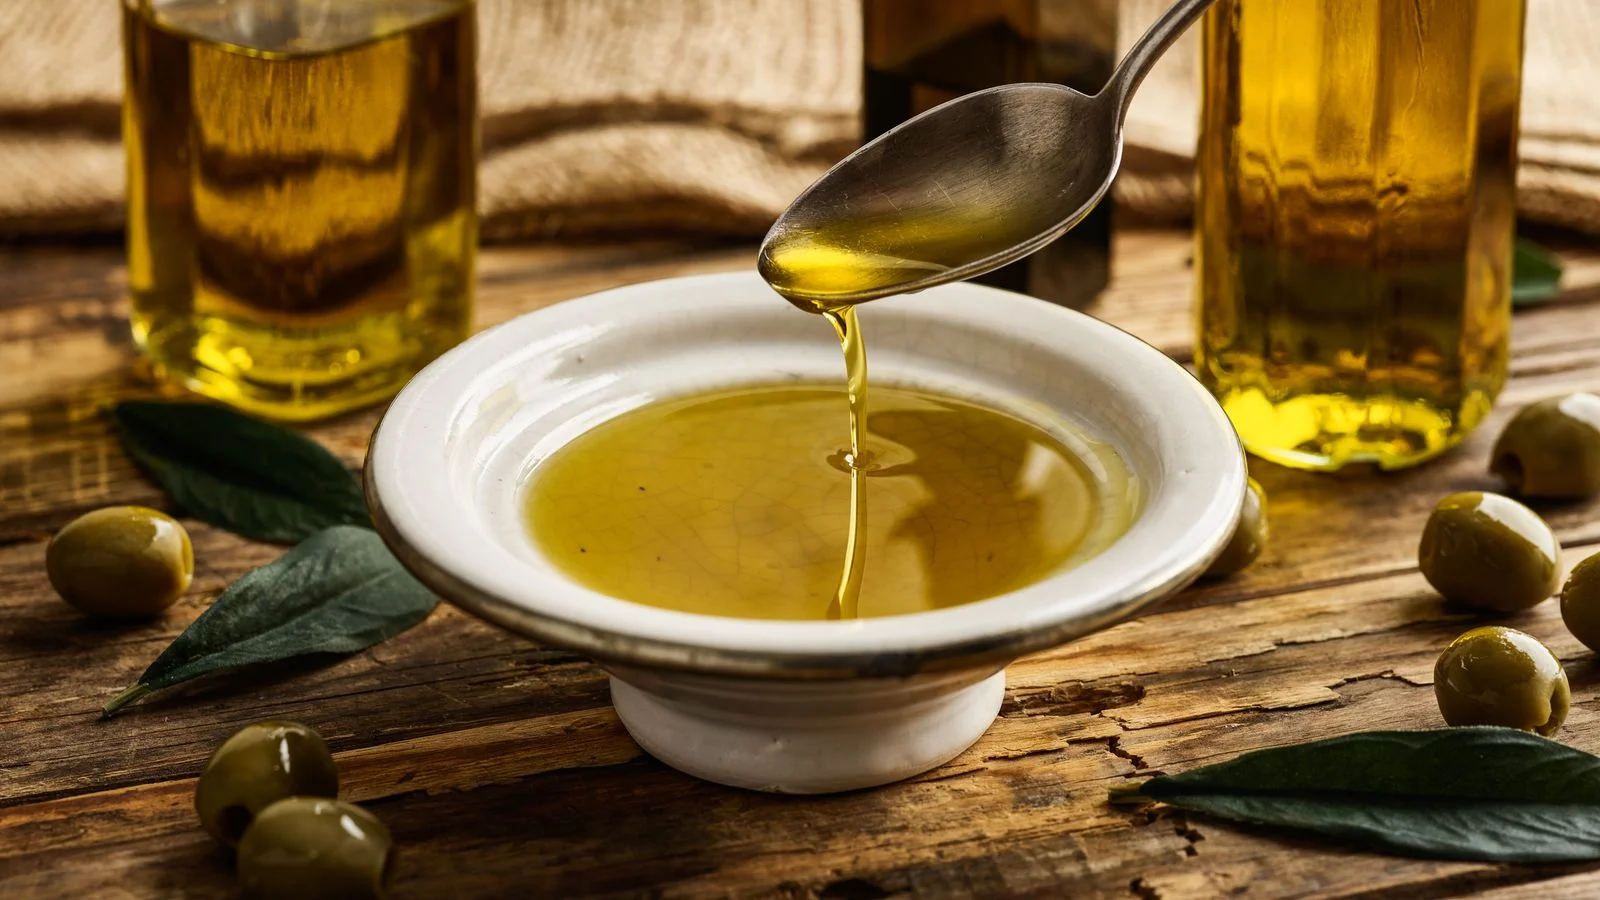 Hvordan bruges olivenolie? Hvad er fordele og ulemper ved olivenolie?